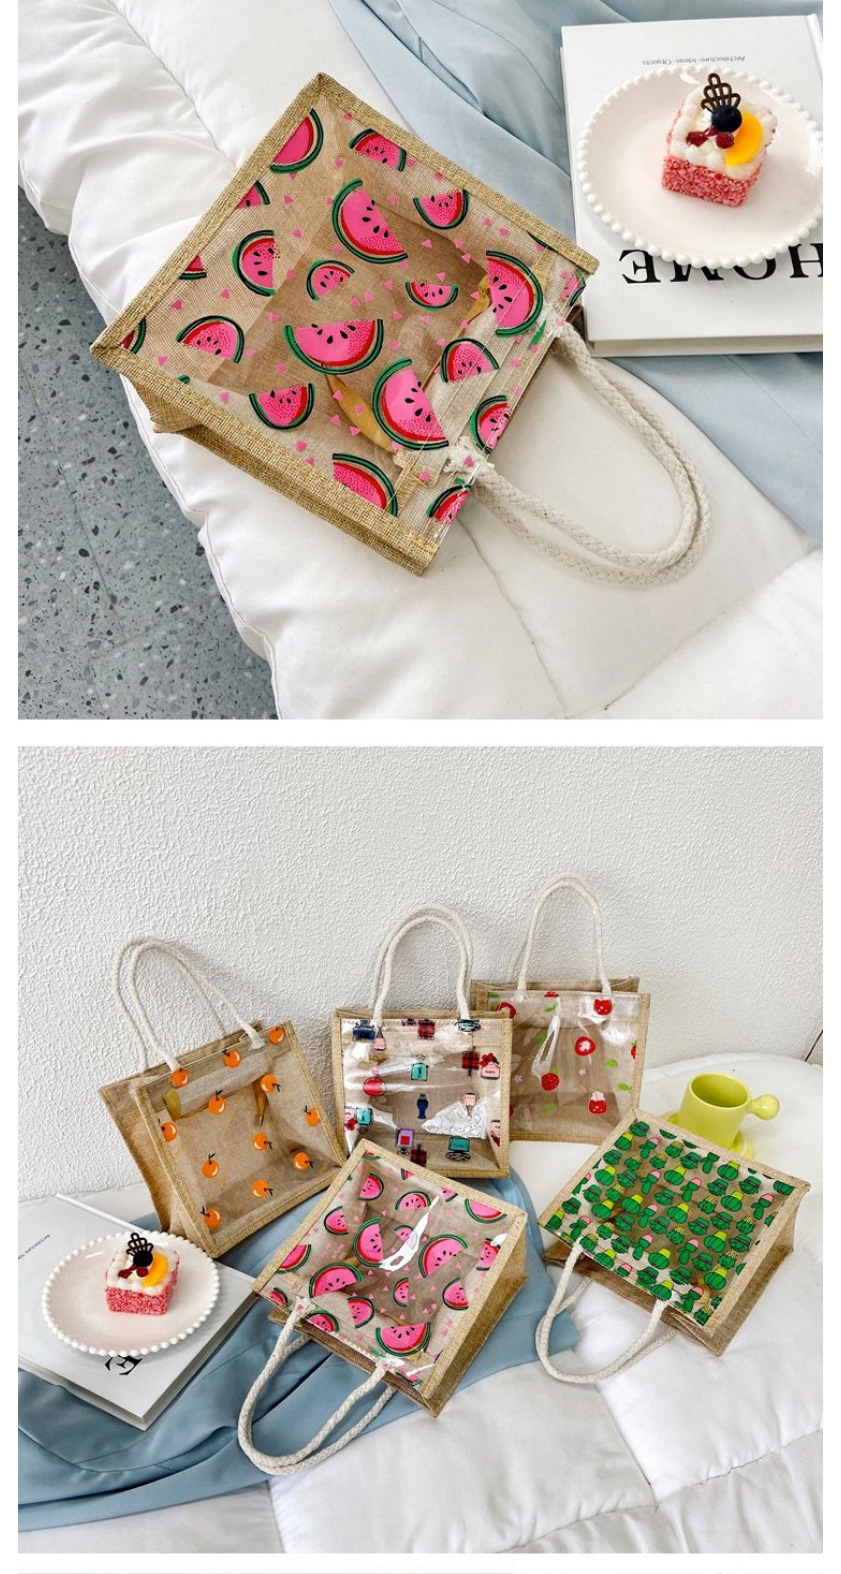 Fashion Cactus Transparent Fruit Print Portable Cotton And Linen Bag,Handbags